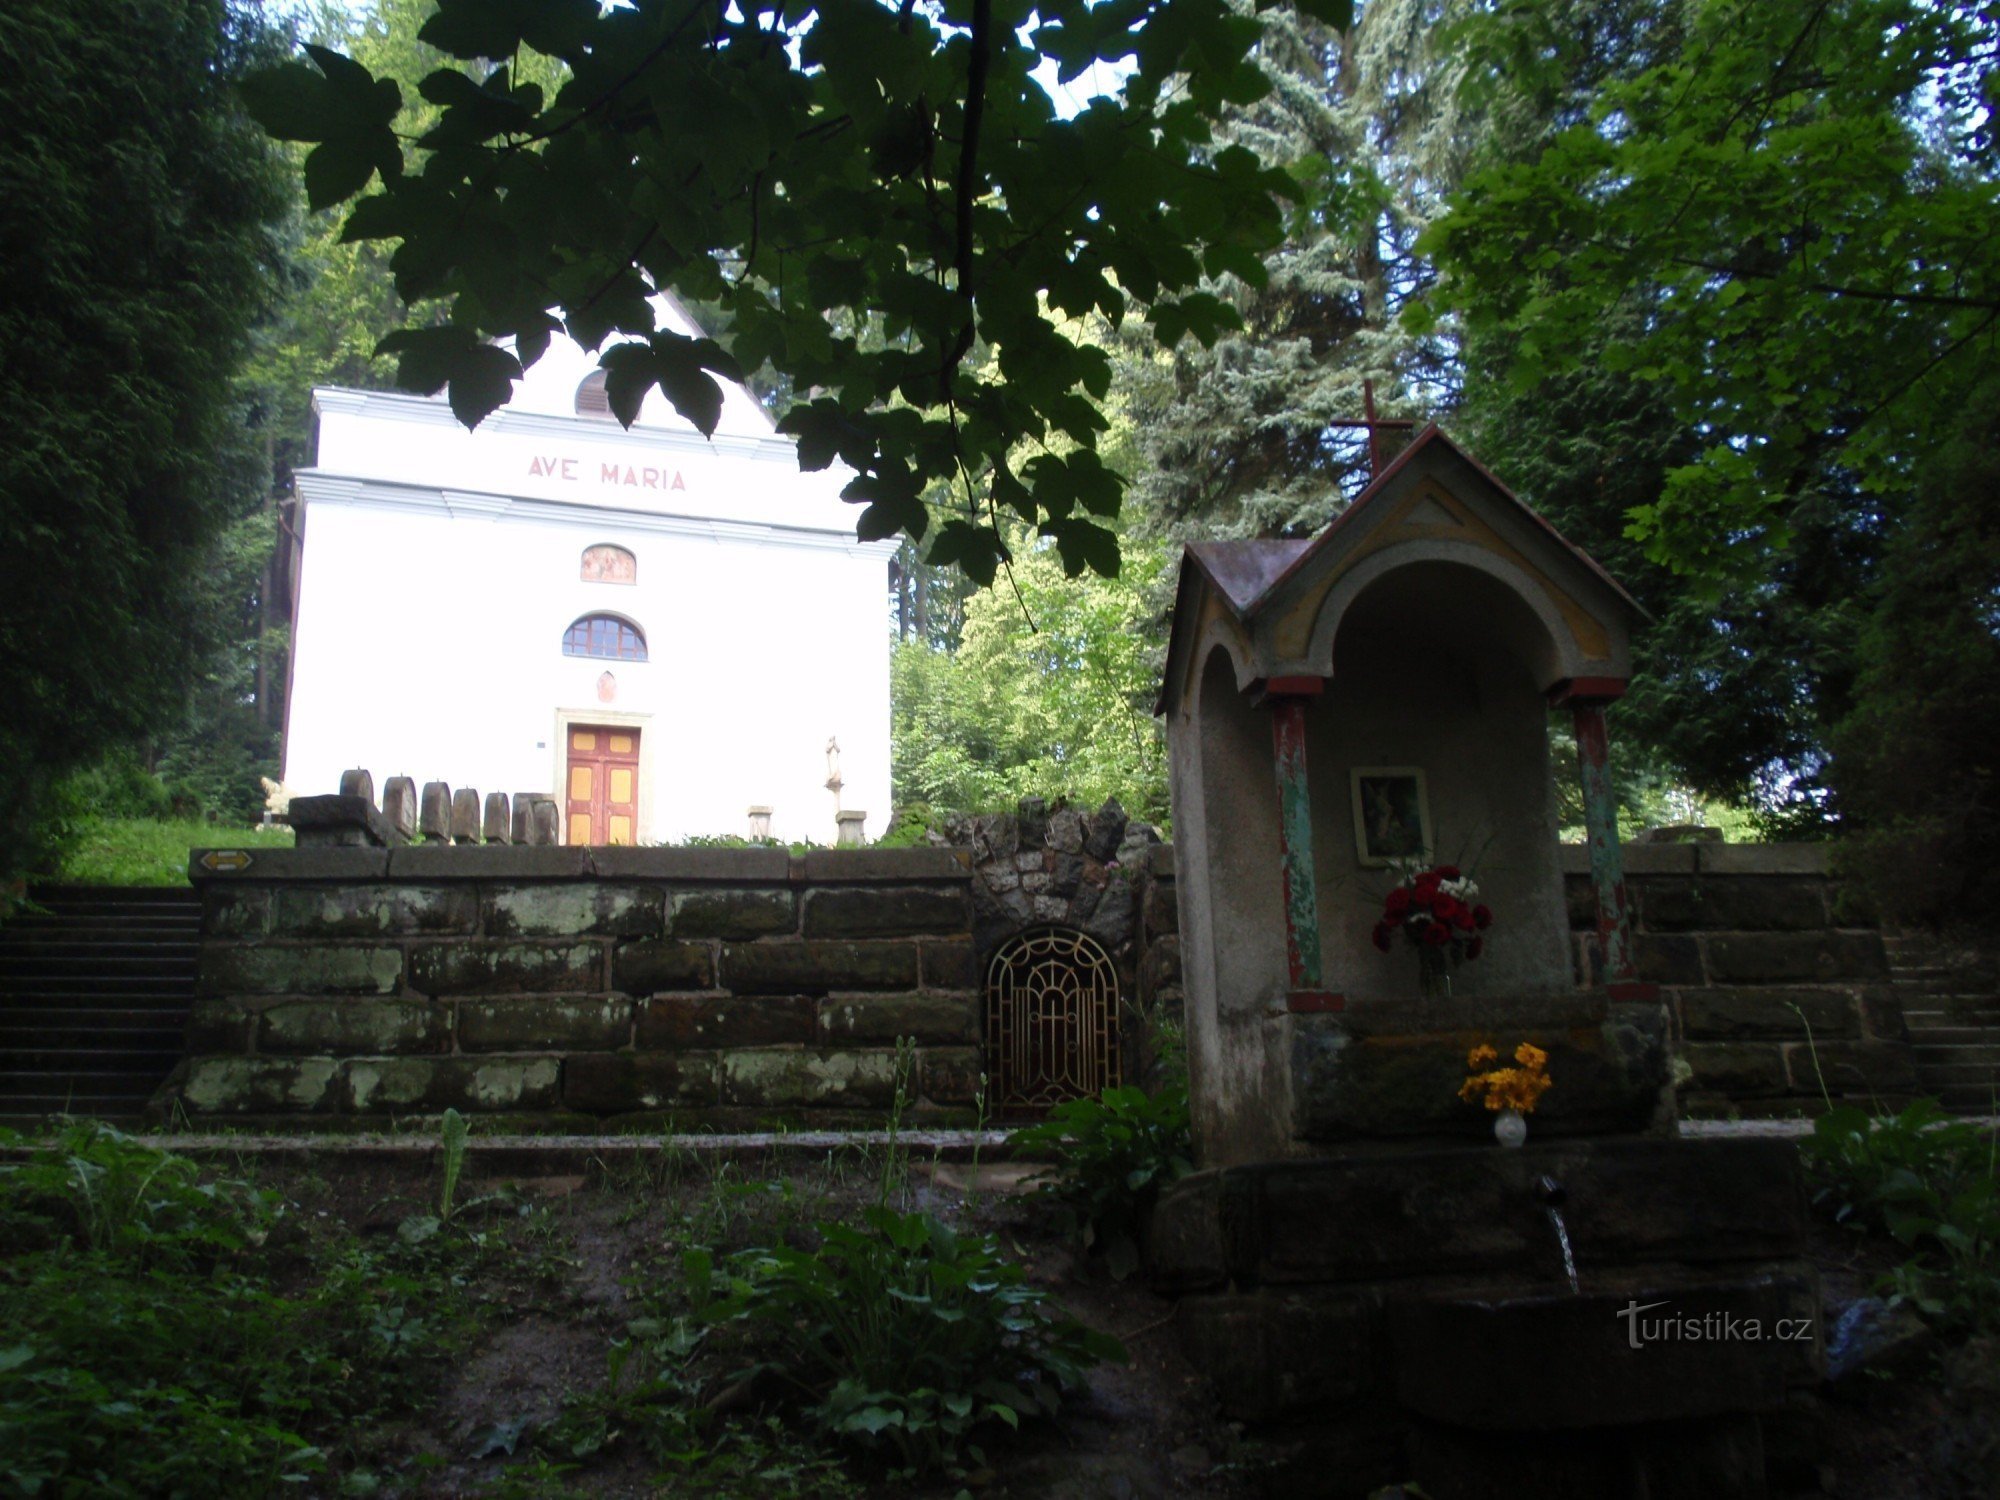 Un lieu de pèlerinage, le chemin de croix et l'ancienne station thermale des montagnes de la Mère de Dieu près de Česká Třebová